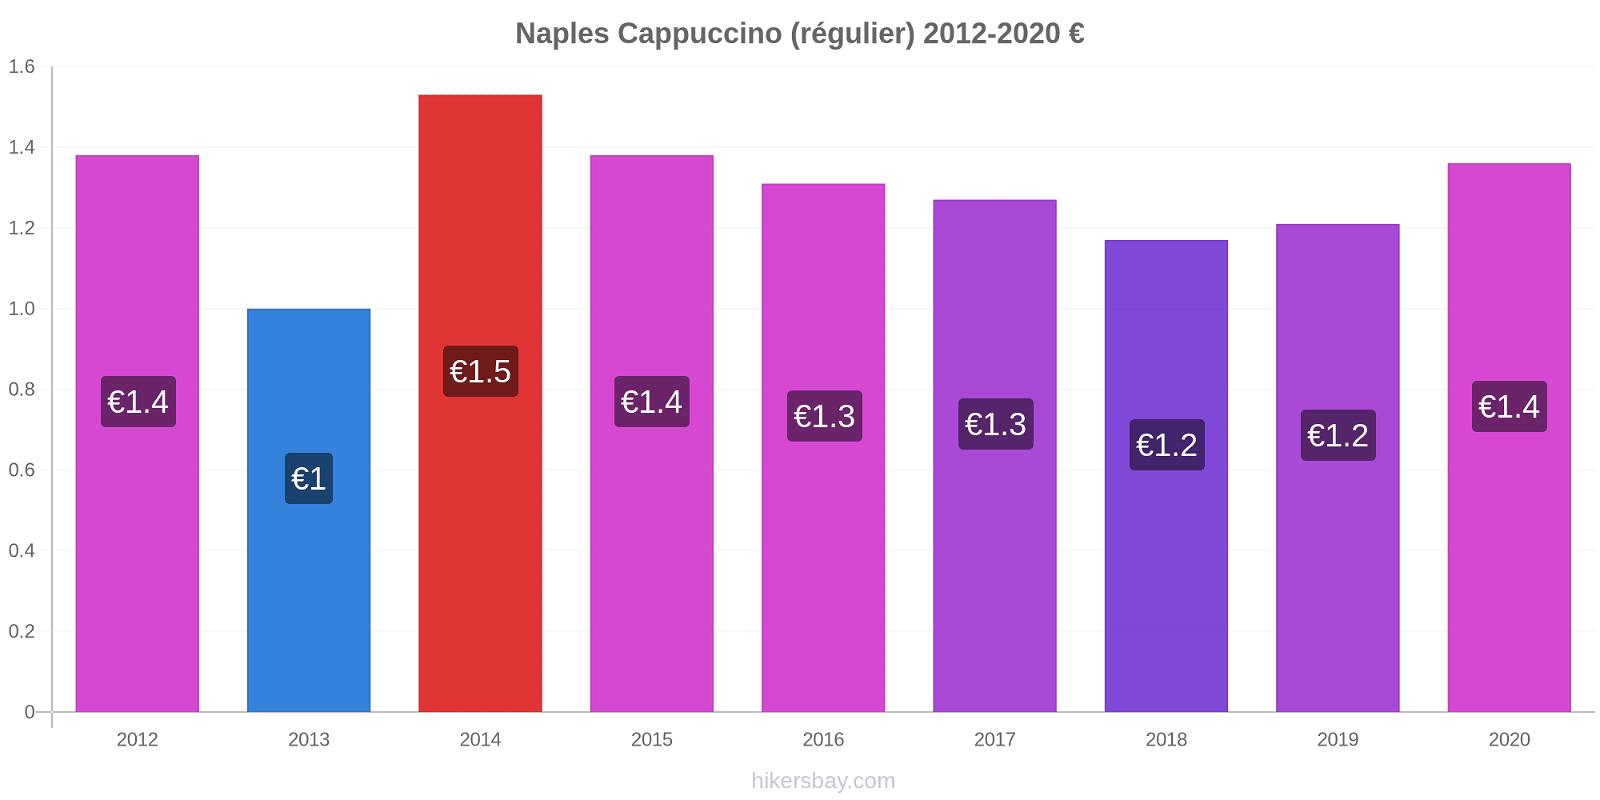 Naples changements de prix Cappuccino (régulier) hikersbay.com